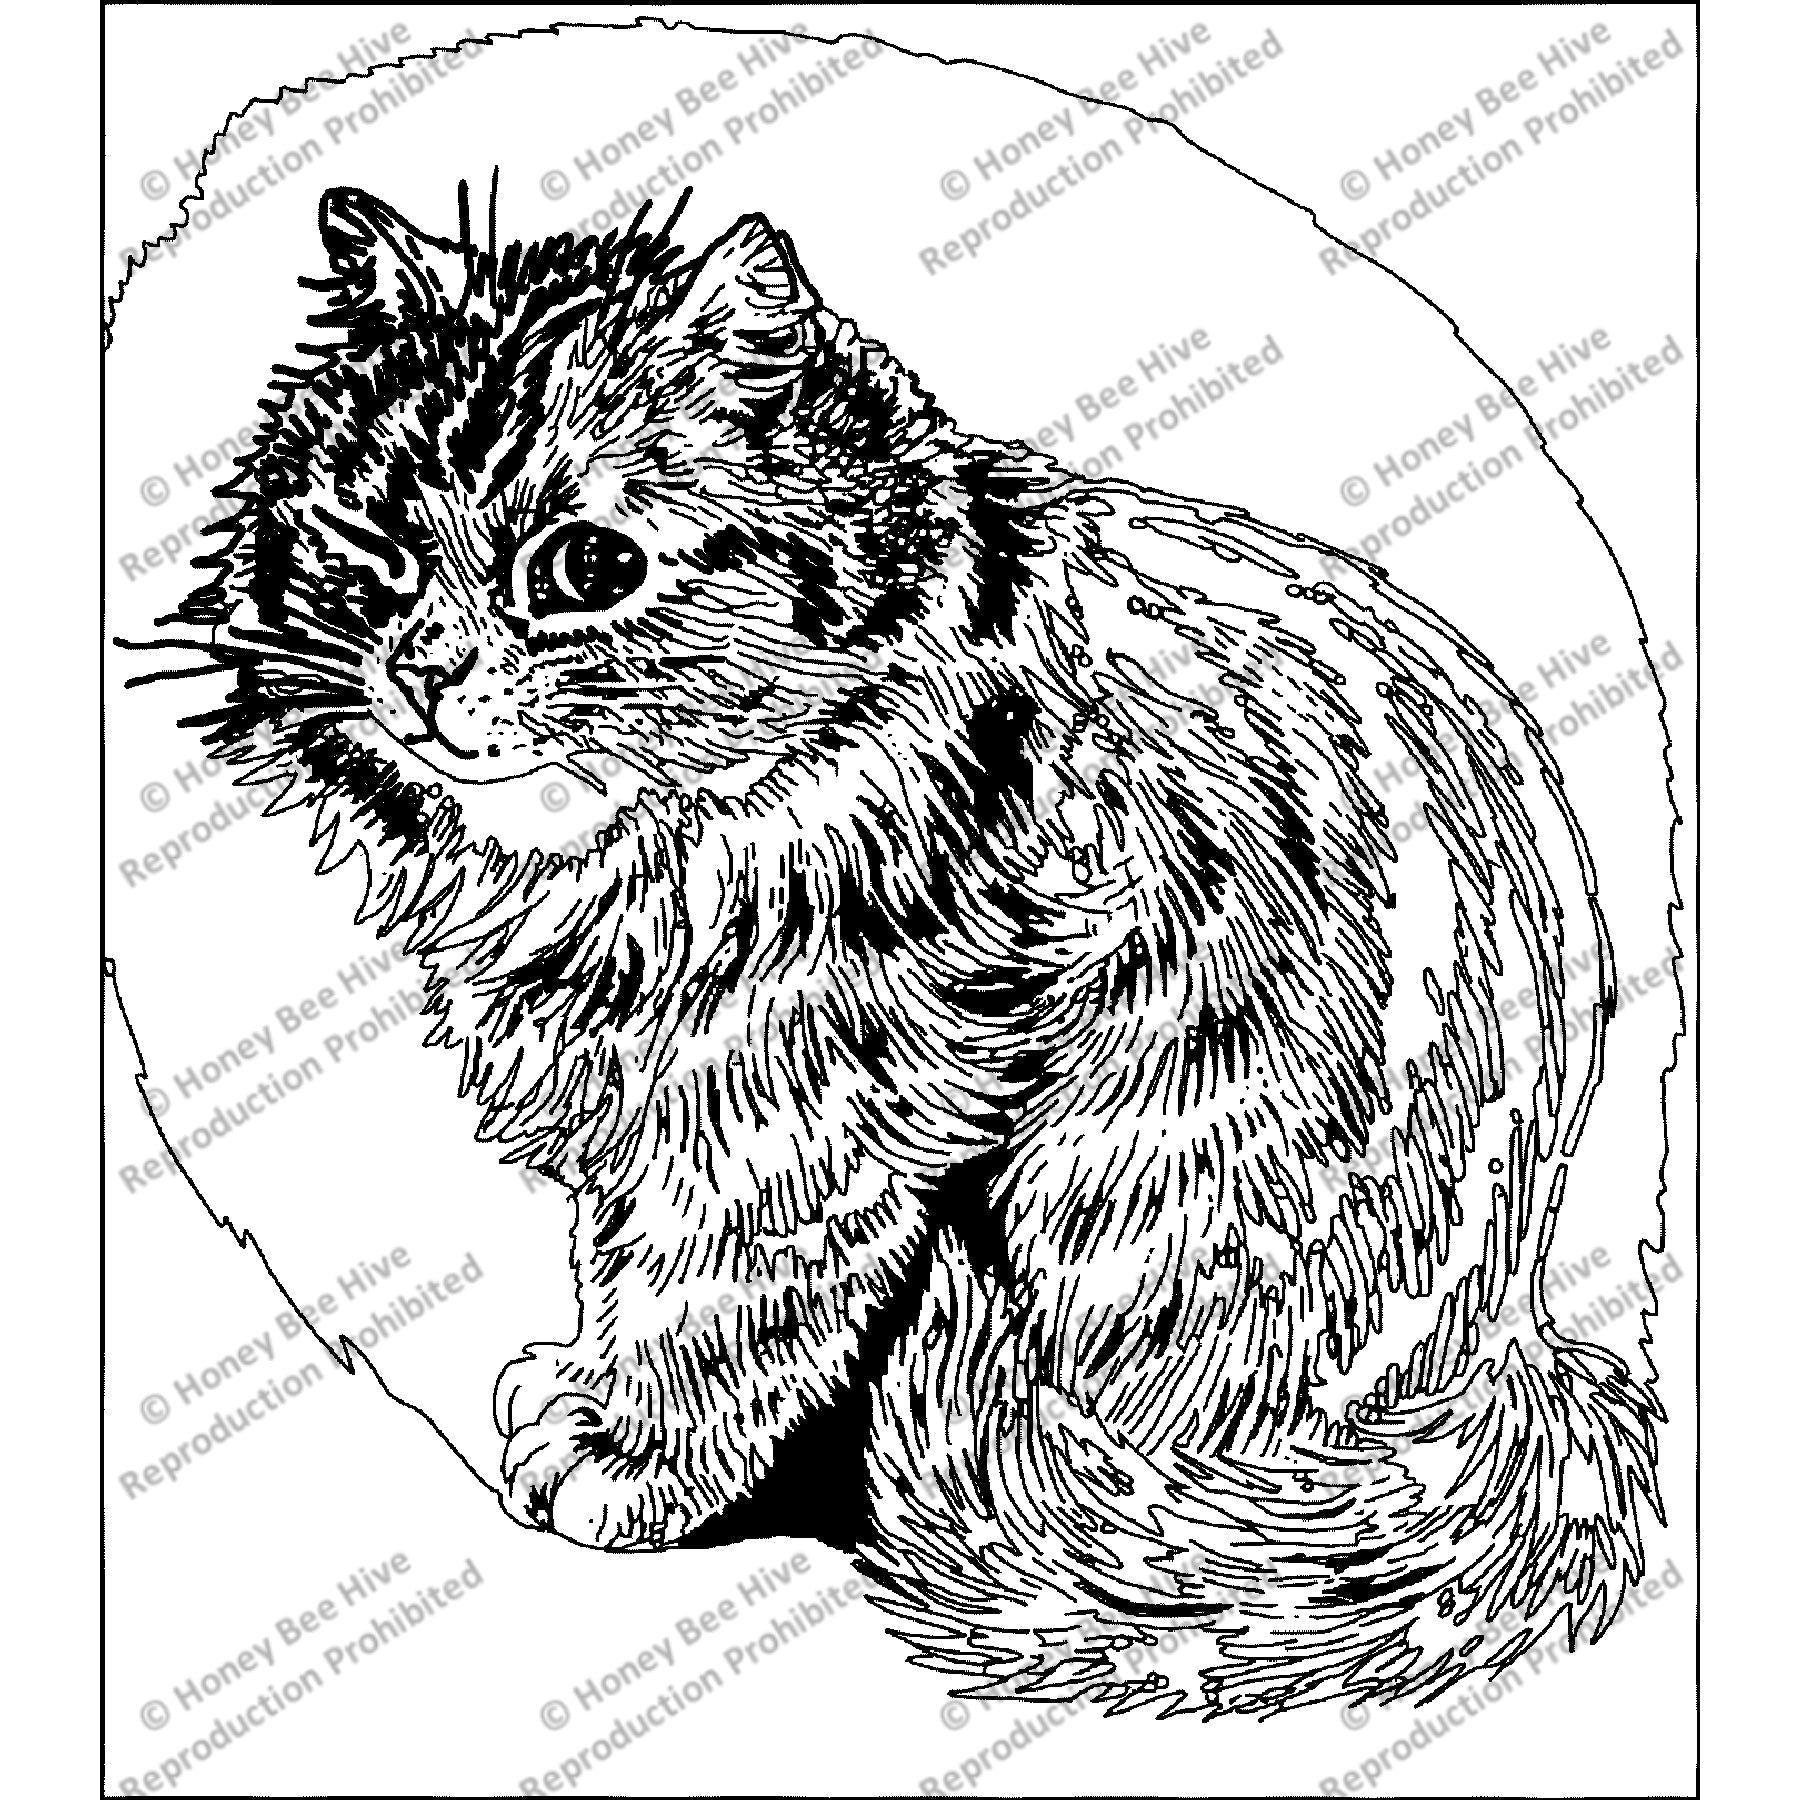 Kitten Stare by Louis Wain, rug hooking pattern